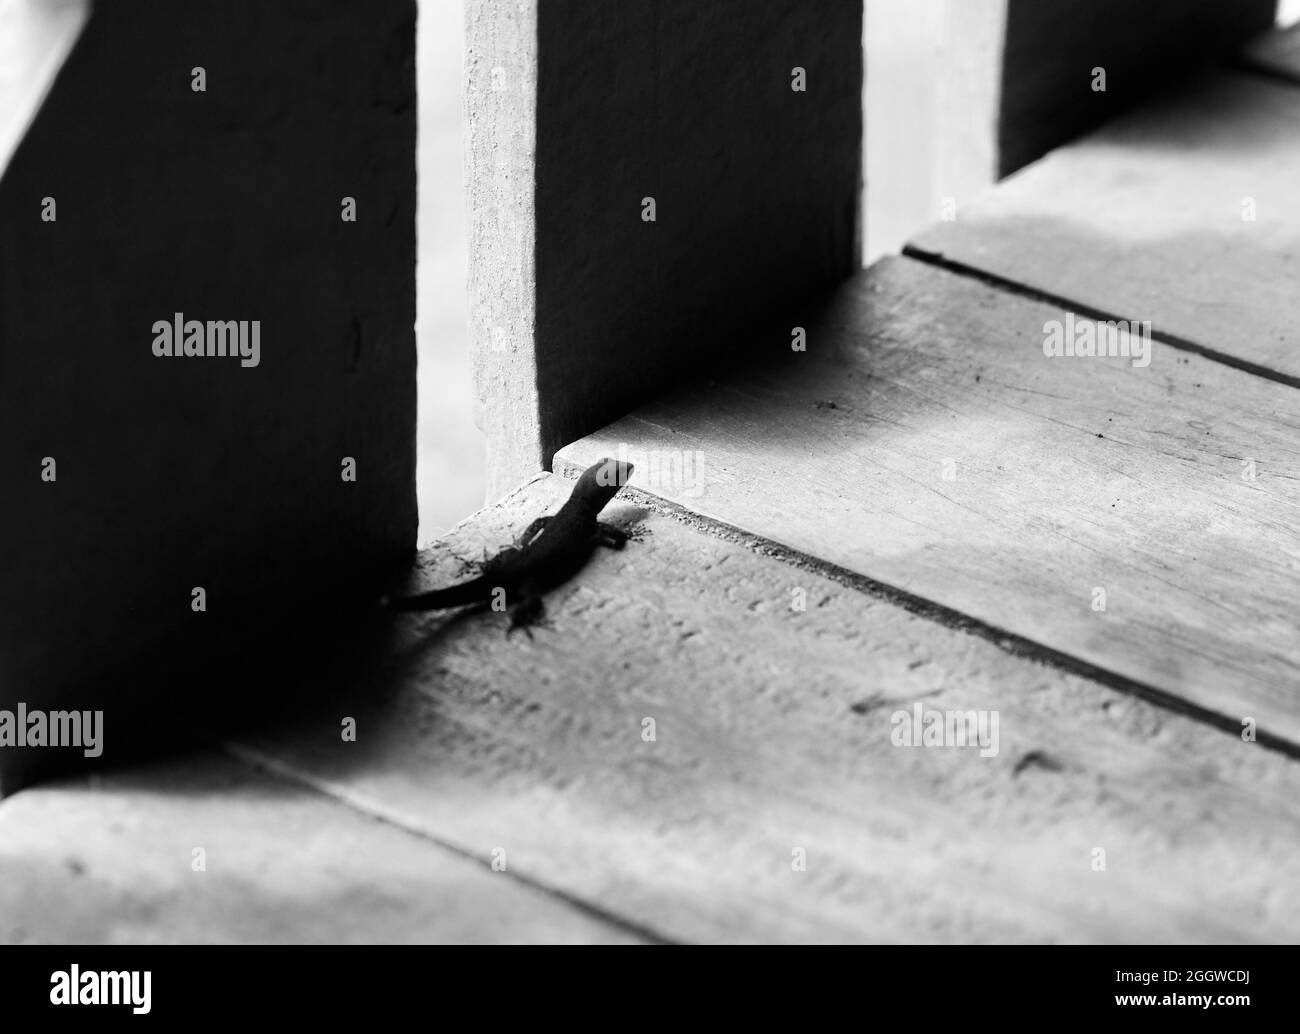 Petit gecko sur parquet Banque D'Images